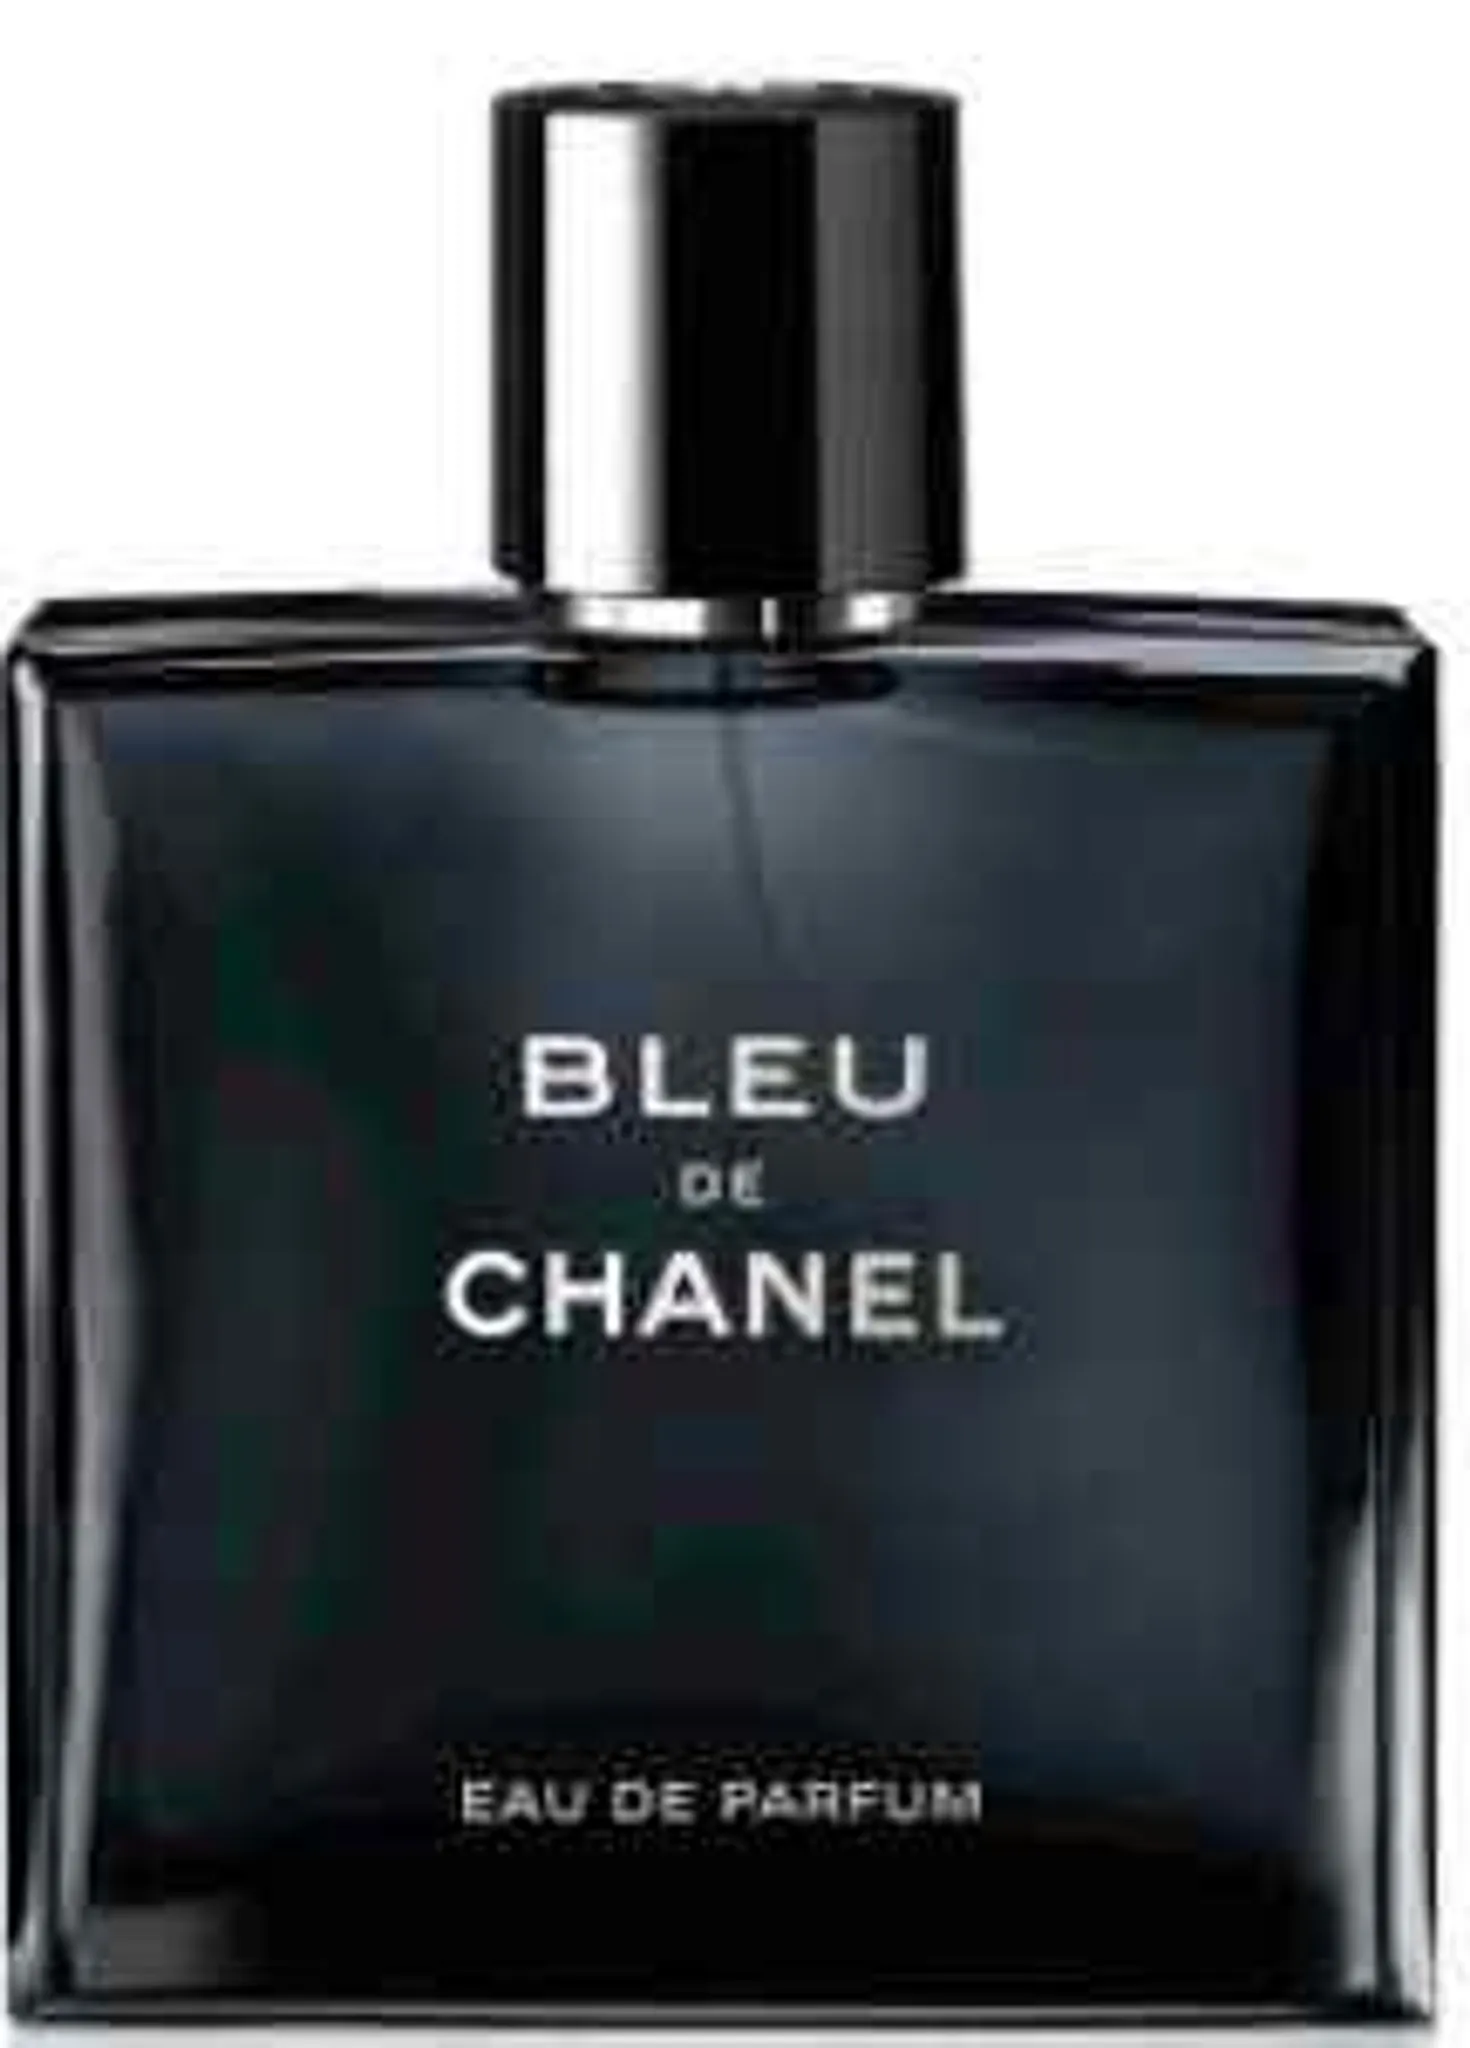 CHANEL - Bleu de Chanel 100 ml Eau de Parfum